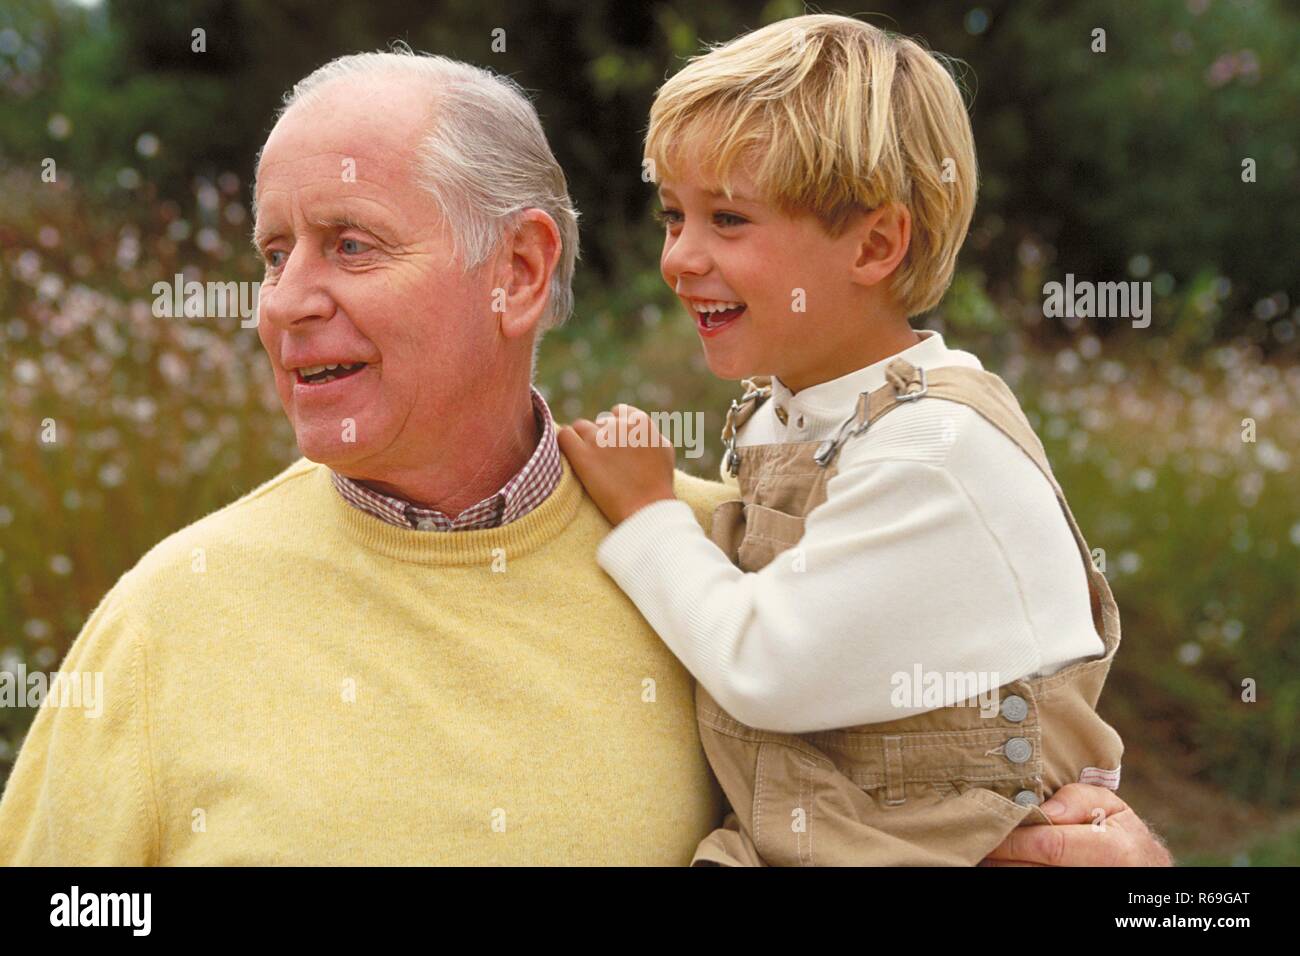 Outdoor, blonder 6 Jahre alter Junge bekleidet mit beiger Latzhose auf dem Arm seines Grossvaters bekleidet mit gelbem Pullover Stock Photo